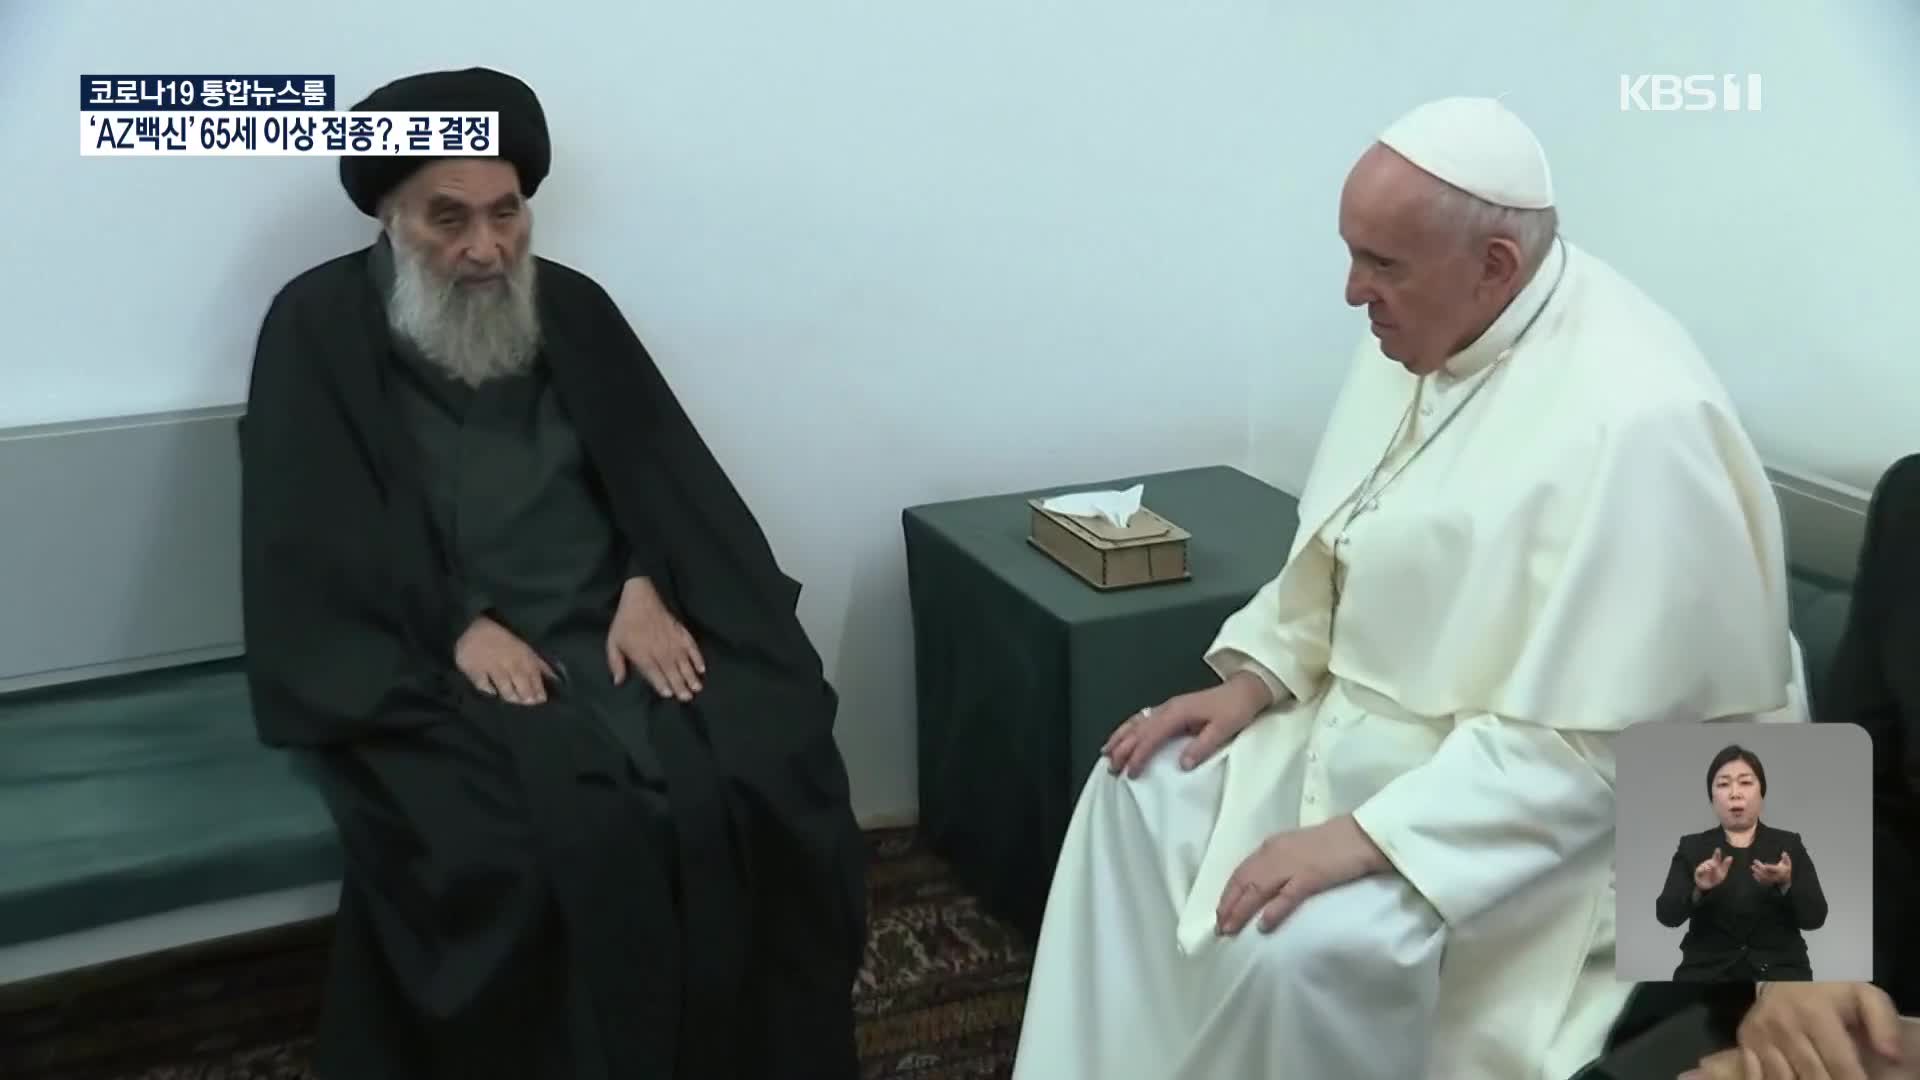 이라크 방문 교황, 이슬람 지도자 만나 포용 촉구